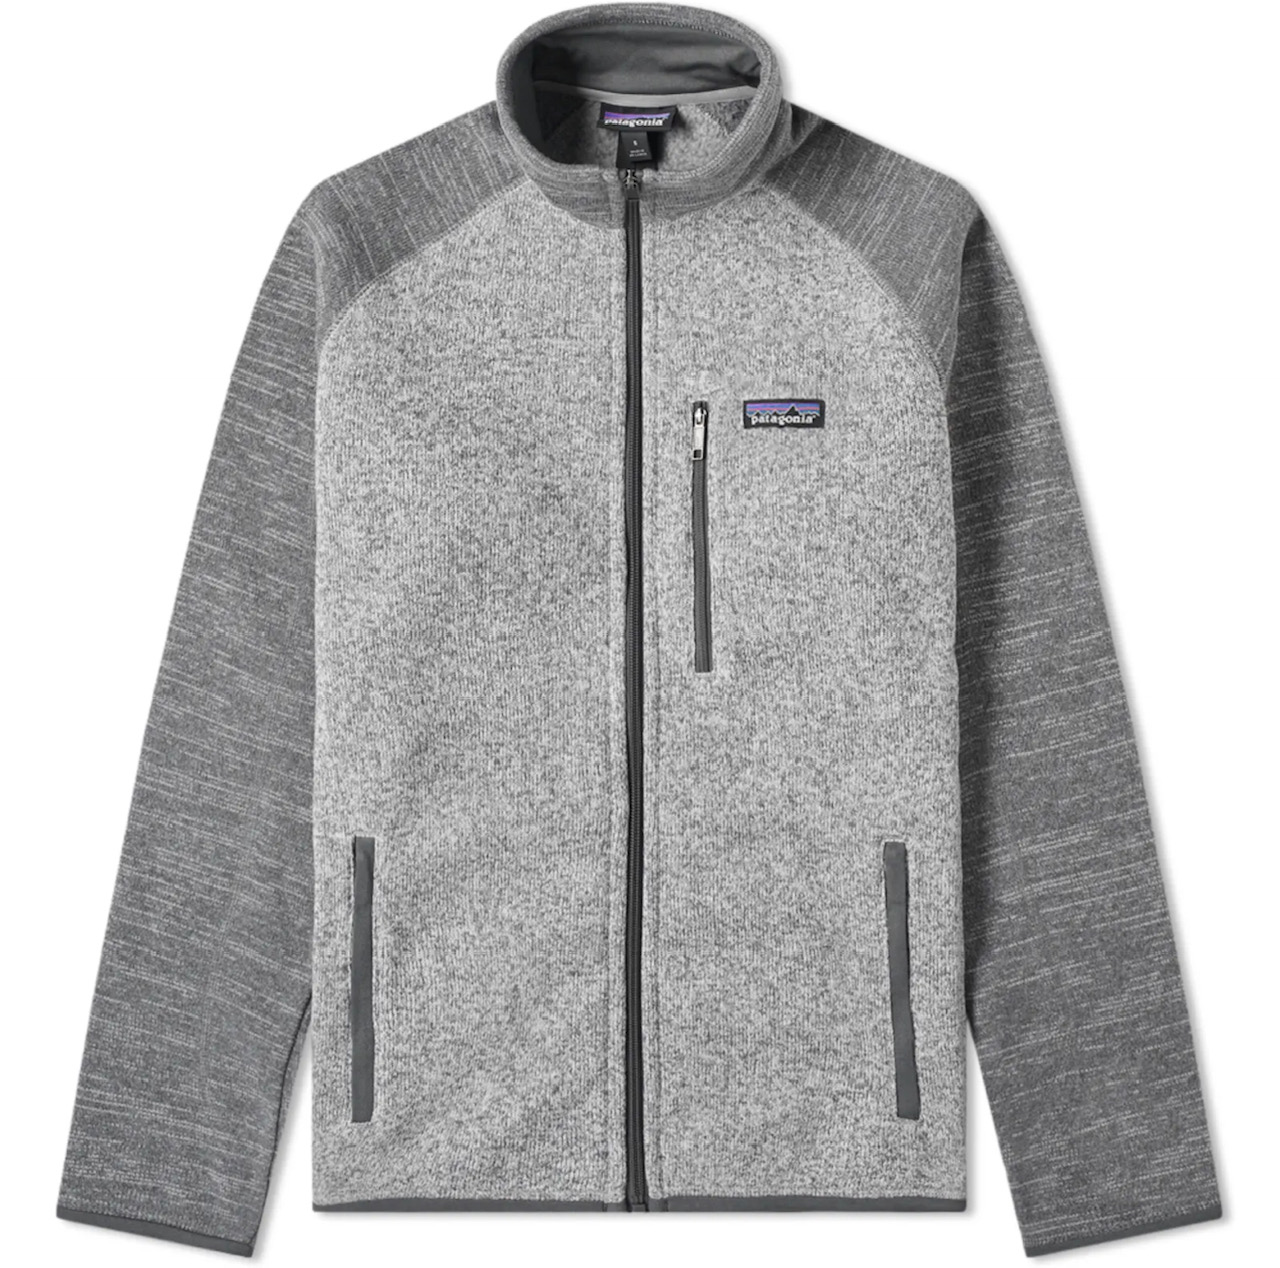 Patagonia M's Better Sweater Jacket - Stonewash/Nickel - XL